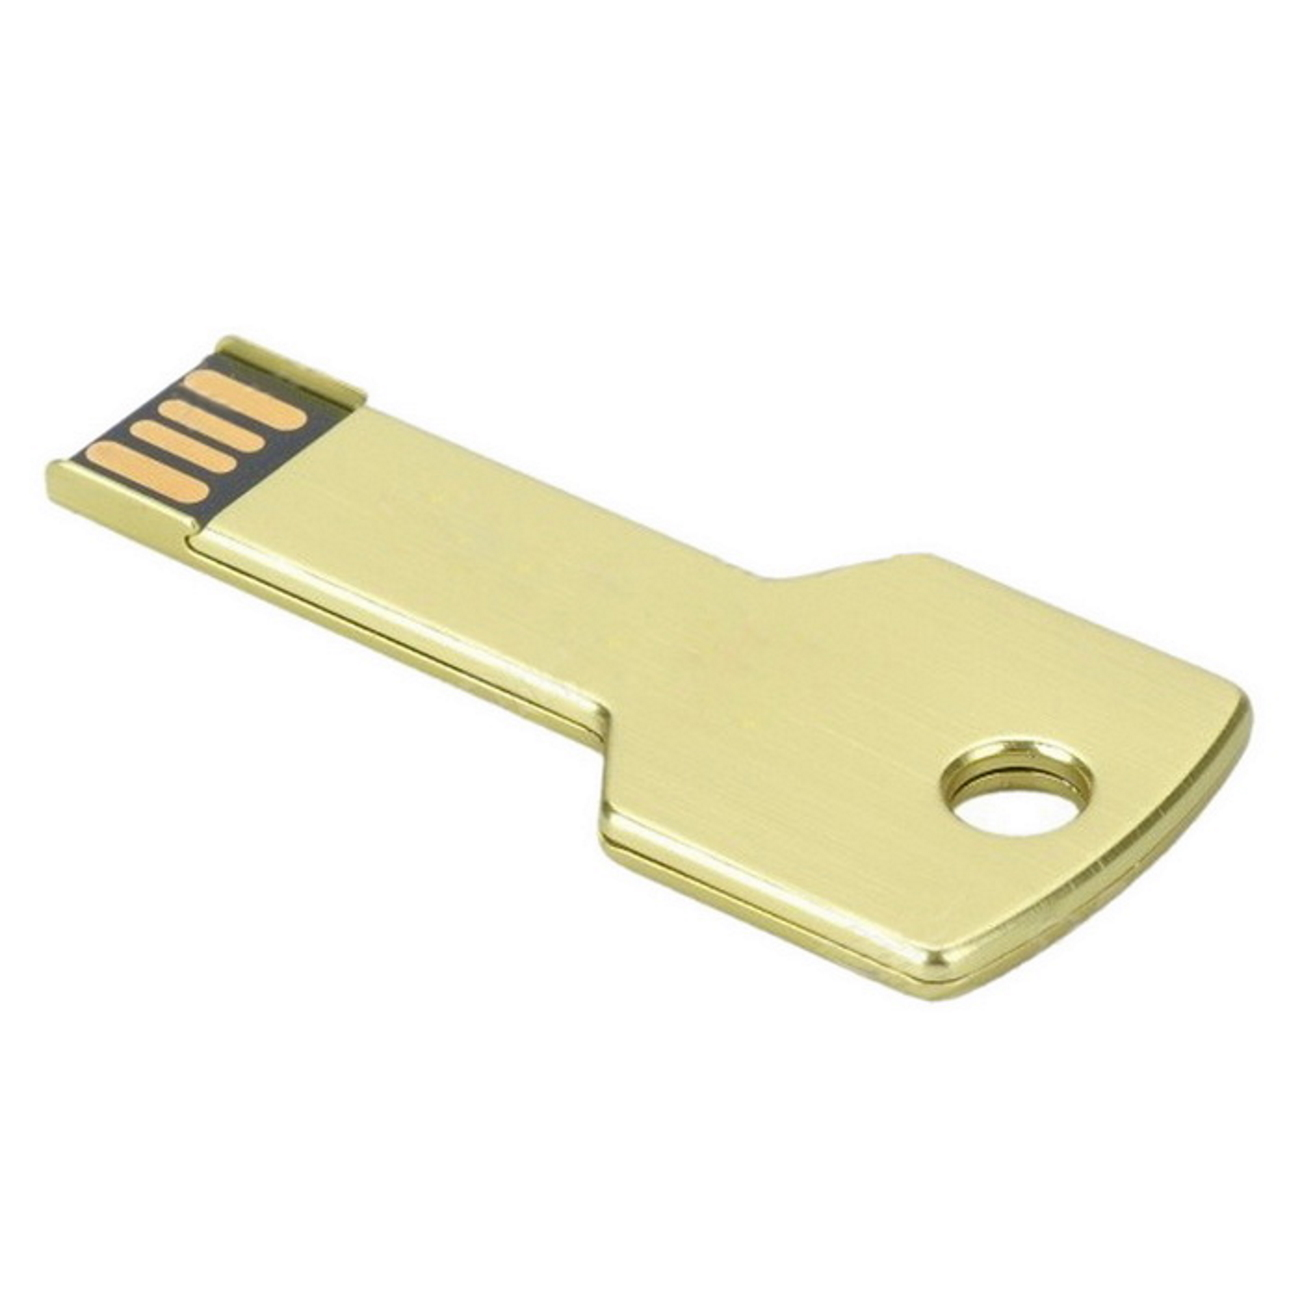 USB GERMANY Key Gold 16GB (Gold, GB) USB-Stick 16